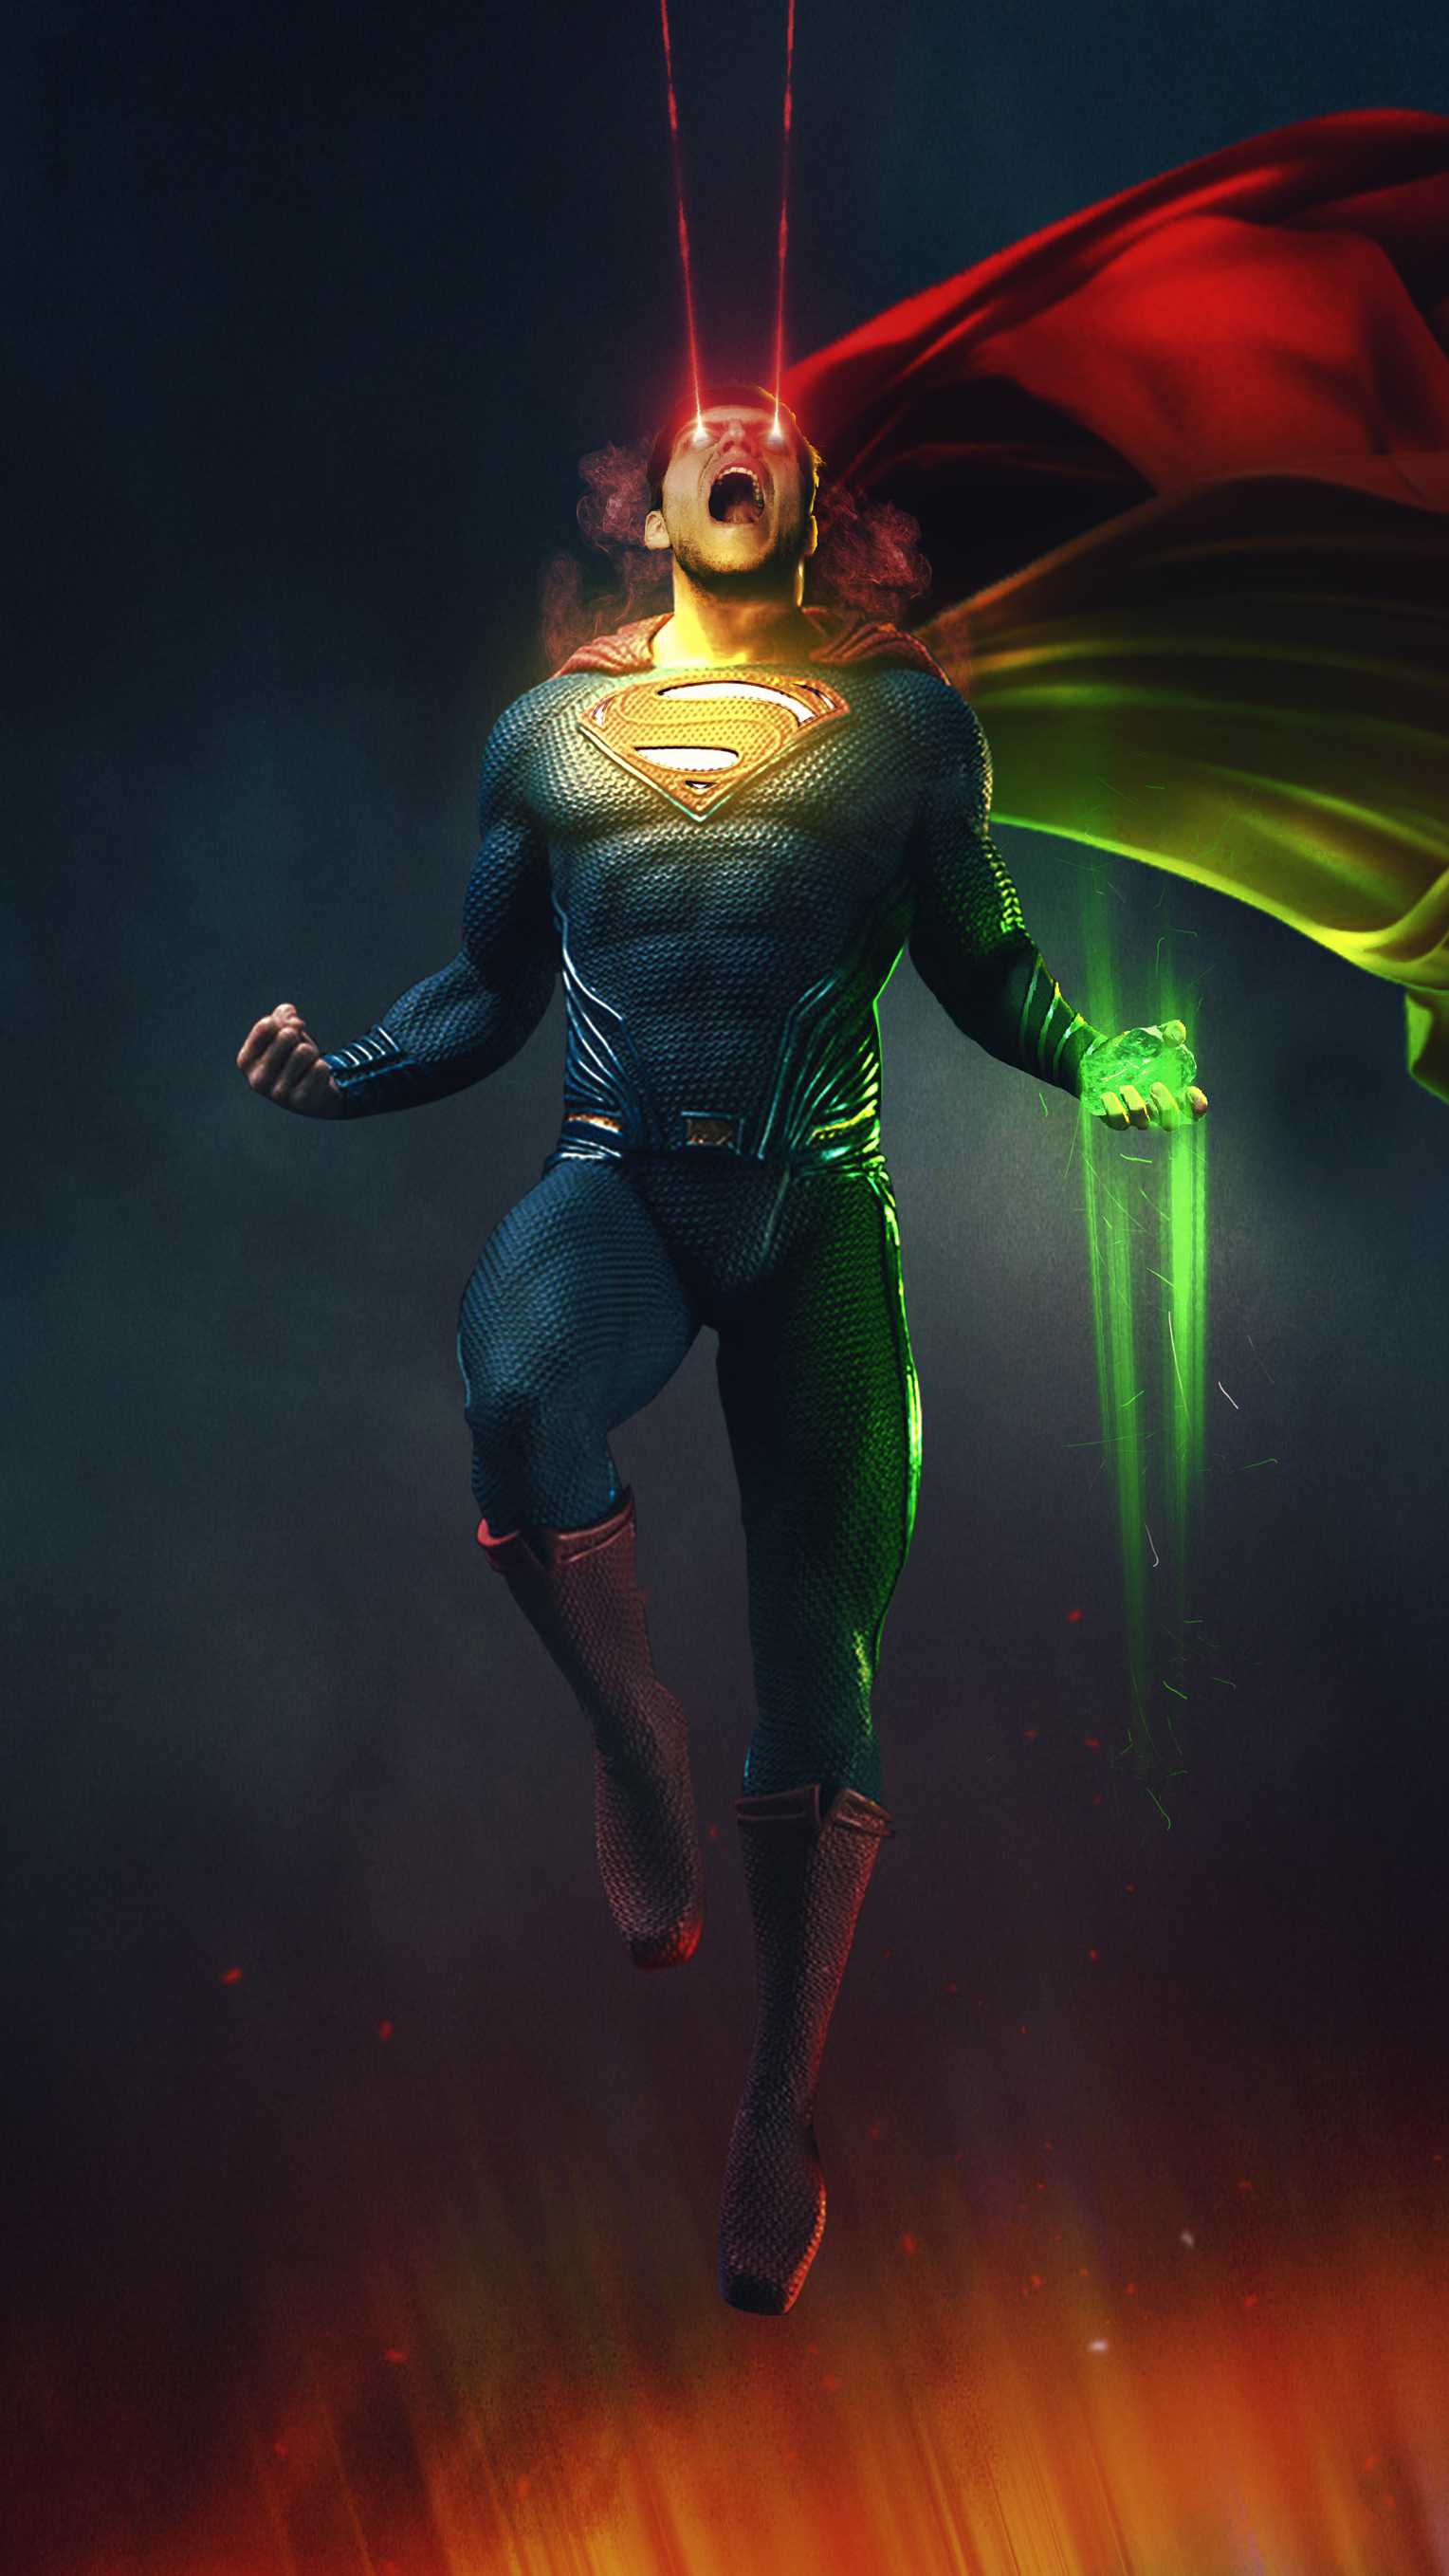 fond d'écran de téléphone superman,homme chauve souris,super héros,personnage fictif,ligue de justice,héros